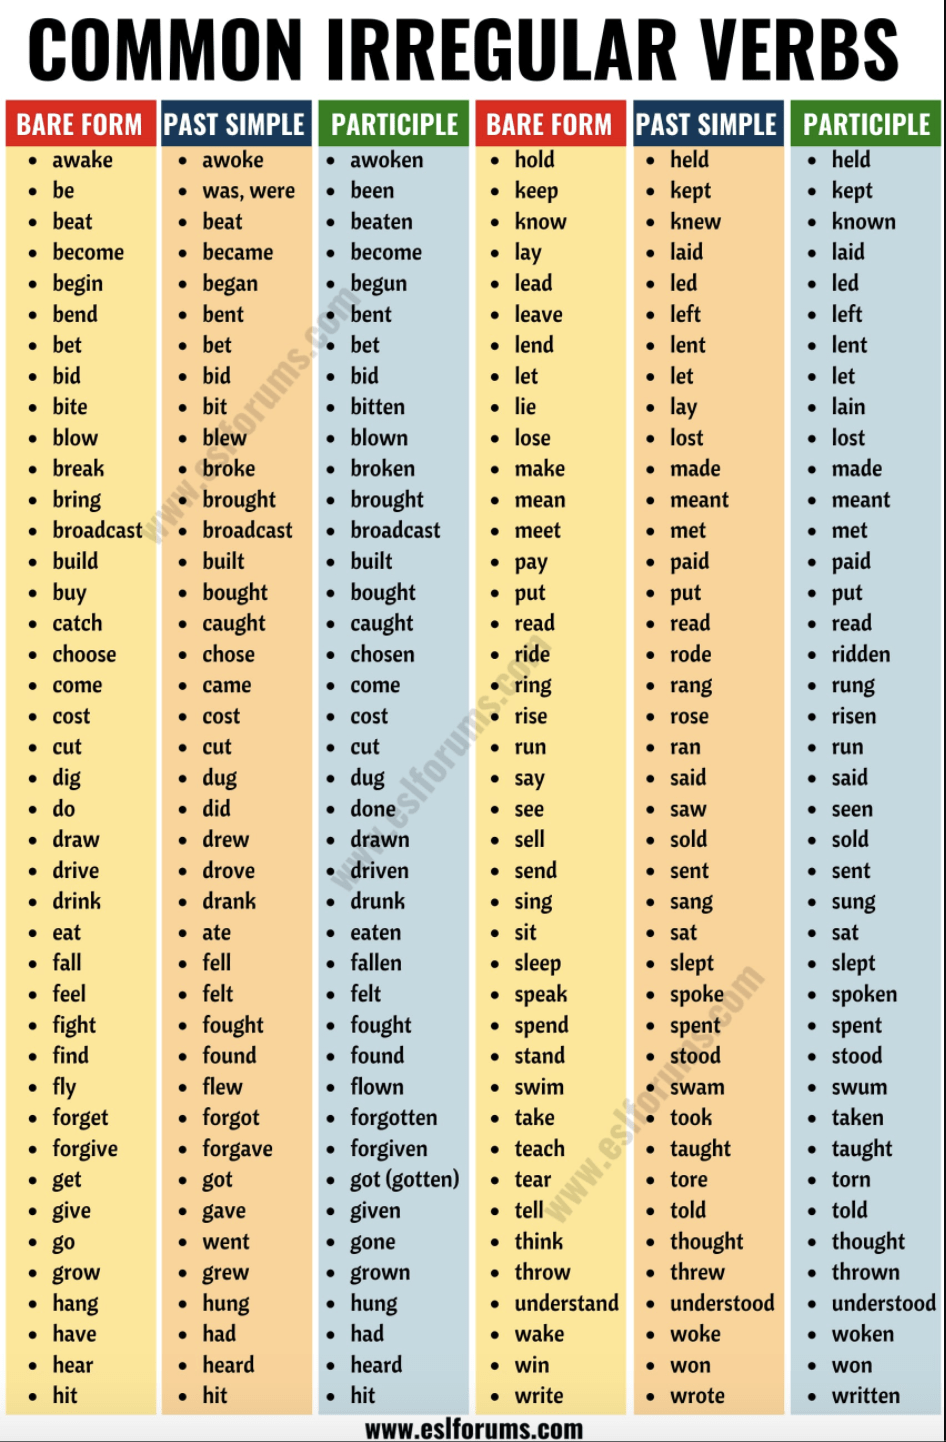 英文學習 不規則動詞三態變型common Irregular Verbs In English 卡哥小技倆